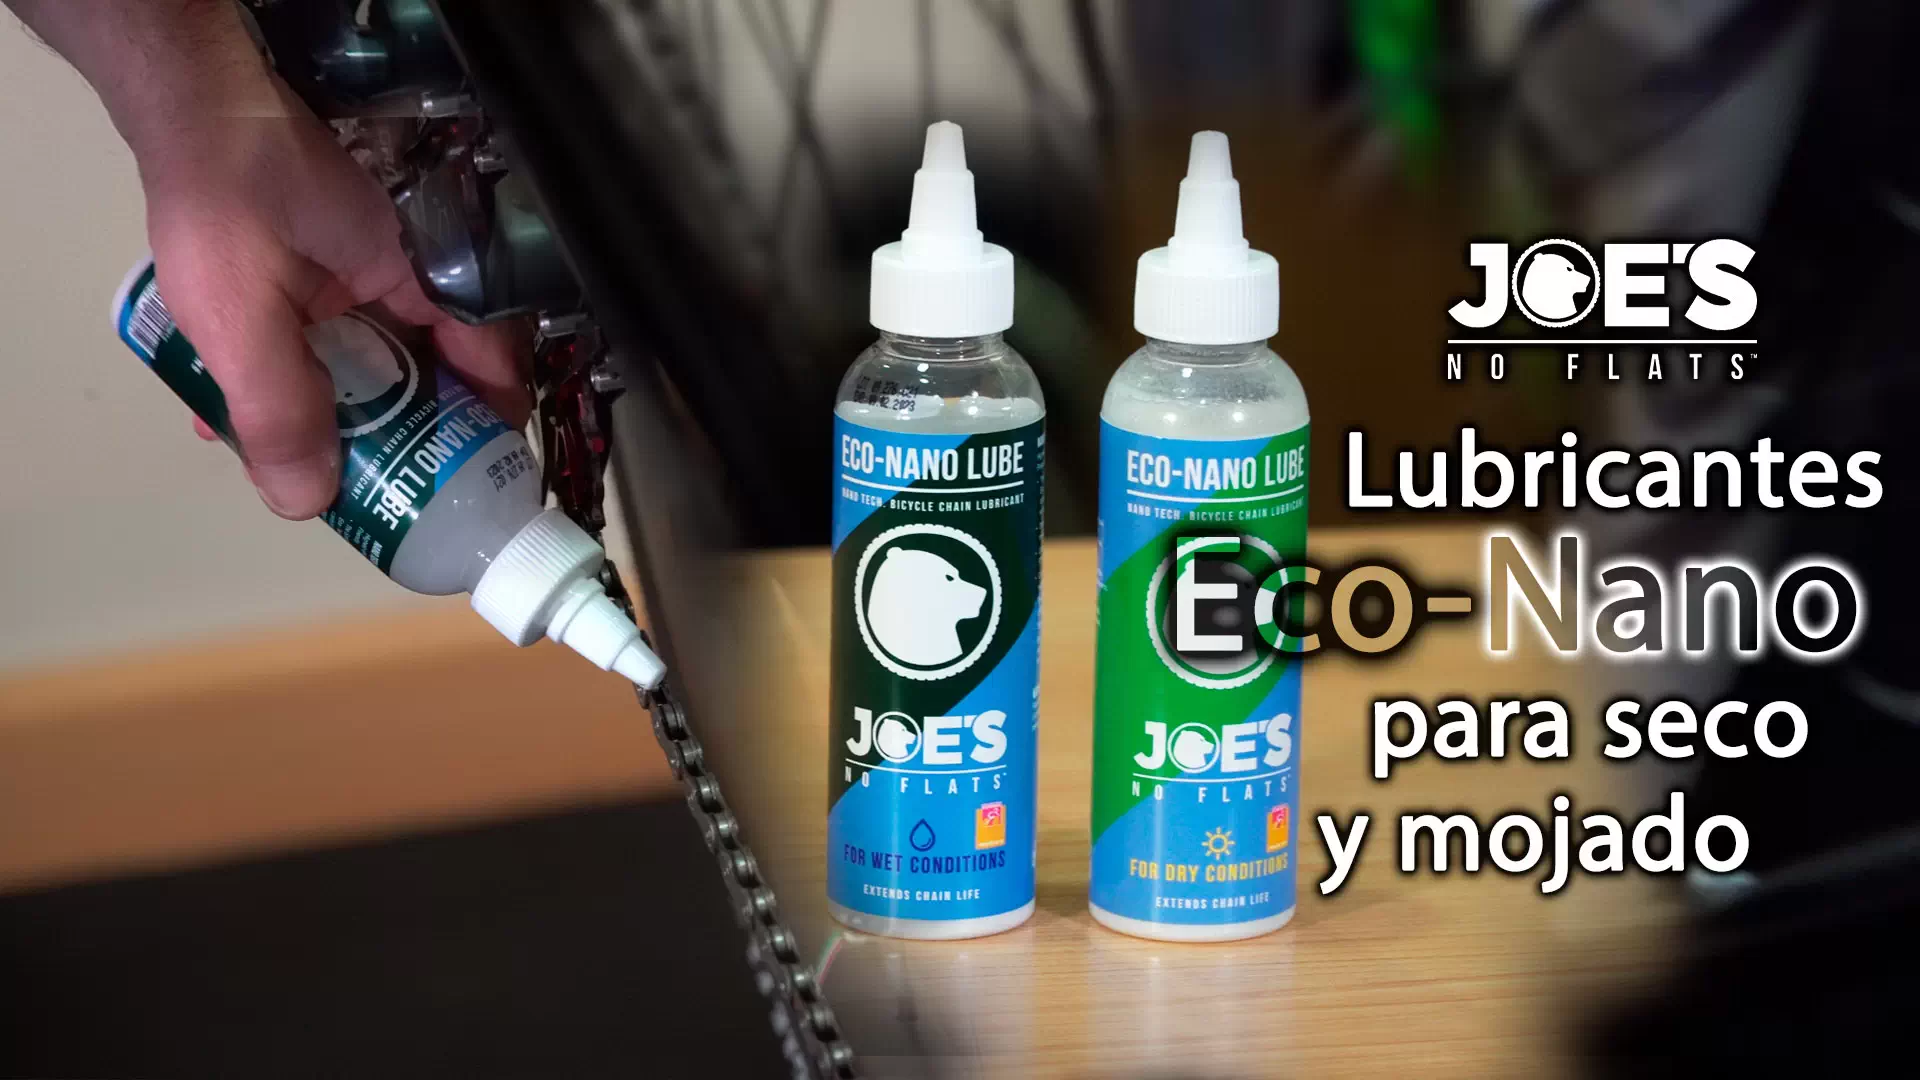 Lubricantes Joe’s Eco-Nano Lube para seco y mojado